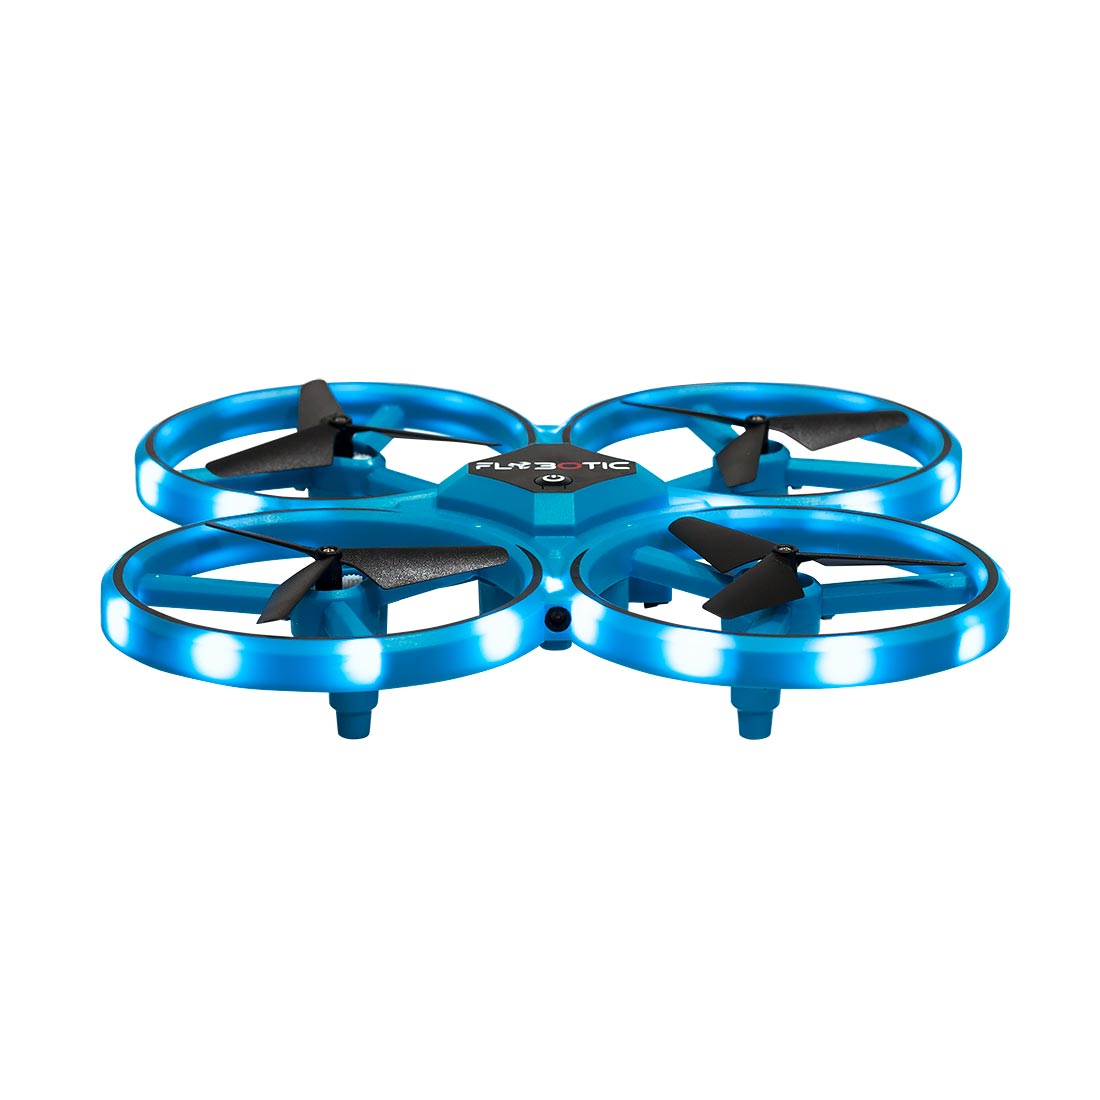  Silverlit - 84769 - Drone de course - Hyperdrone